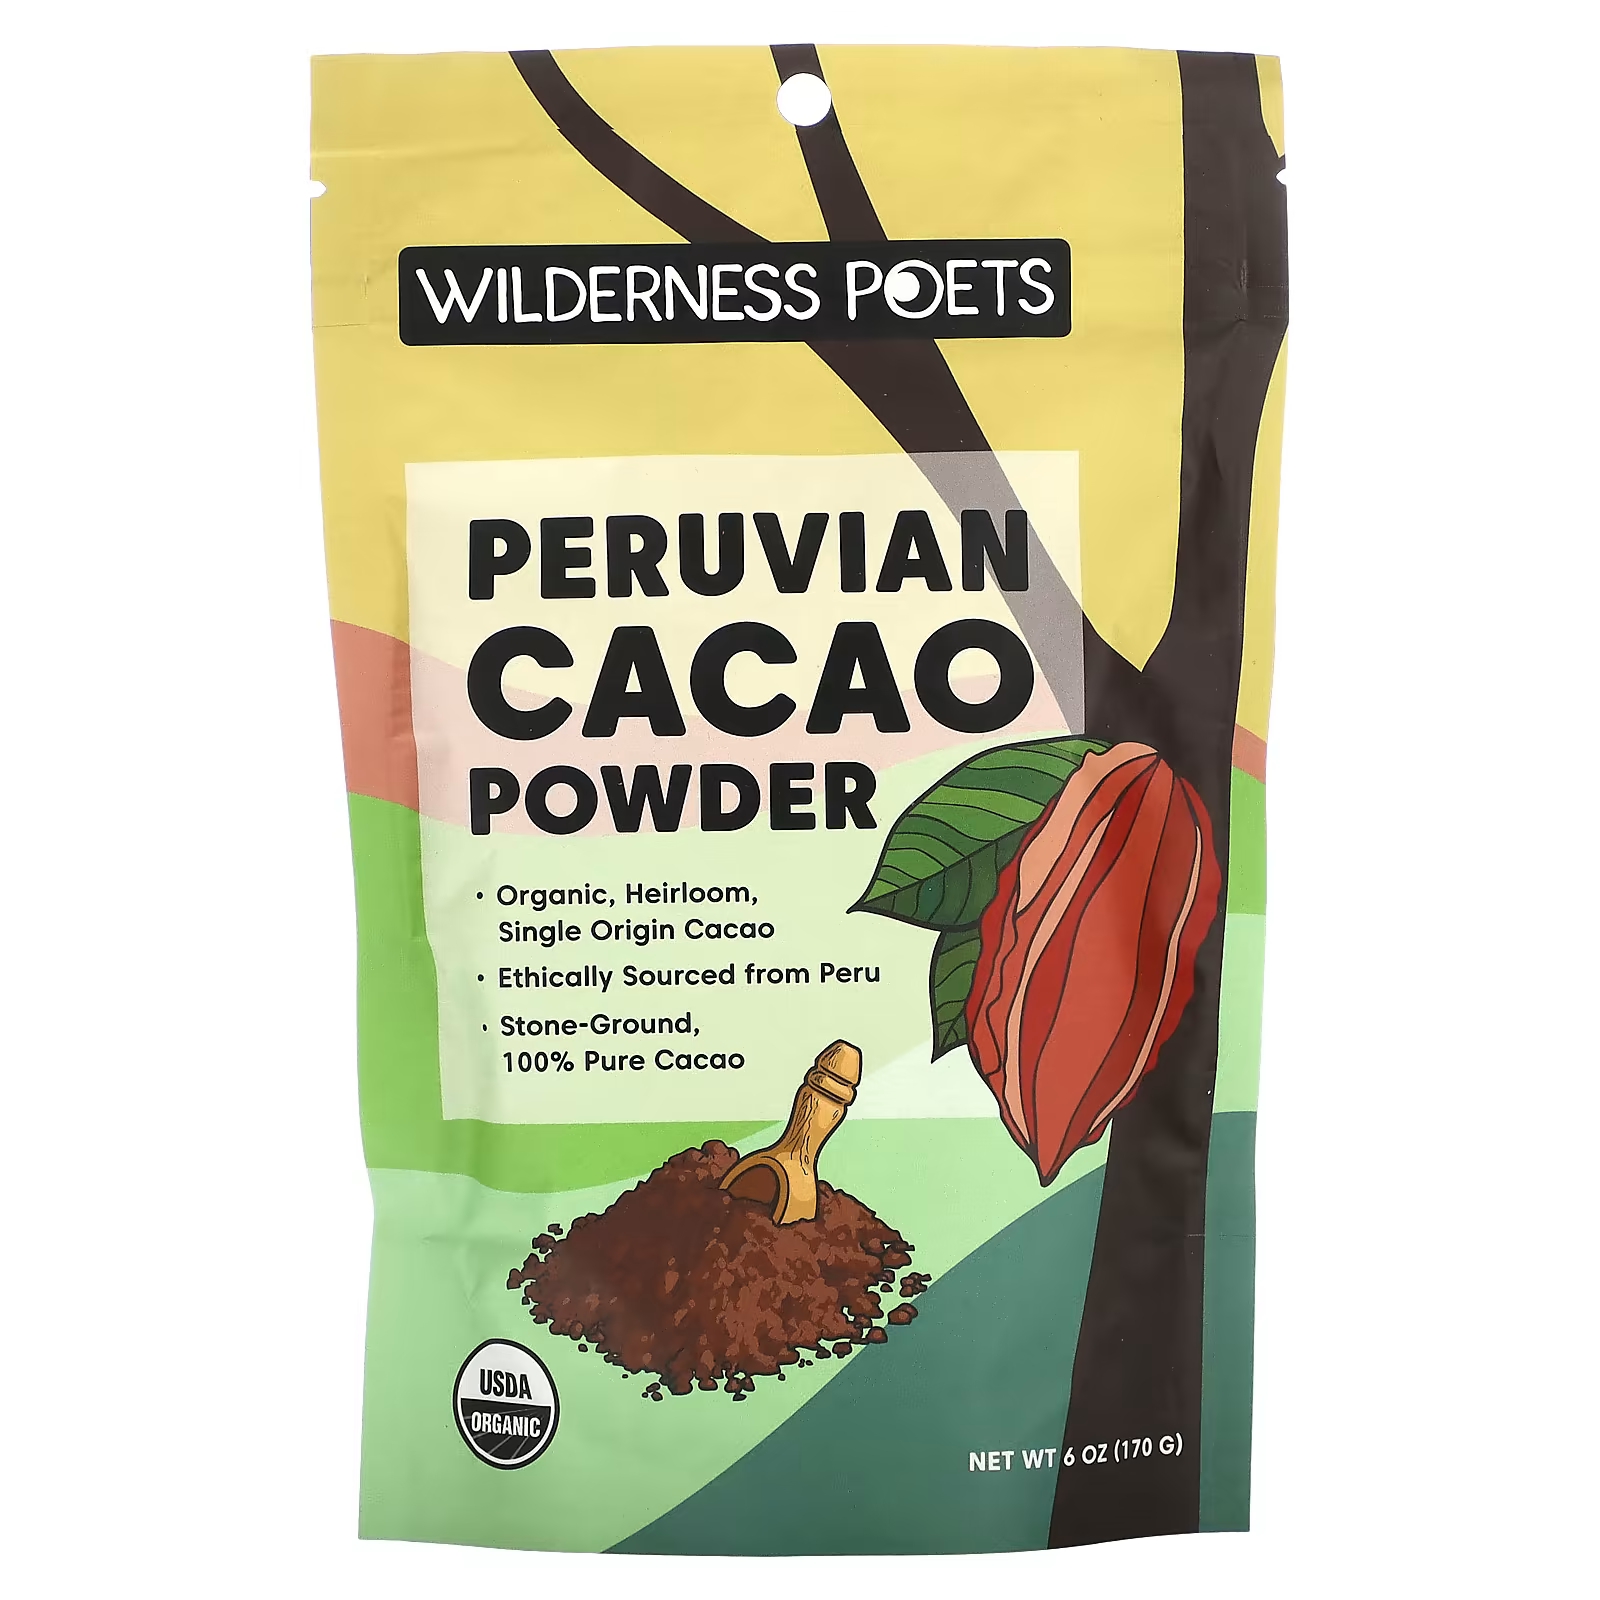 Перуанский какао-порошок Wilderness Poets wilderness poets органический чай матча для церемоний 22 г 1 унция